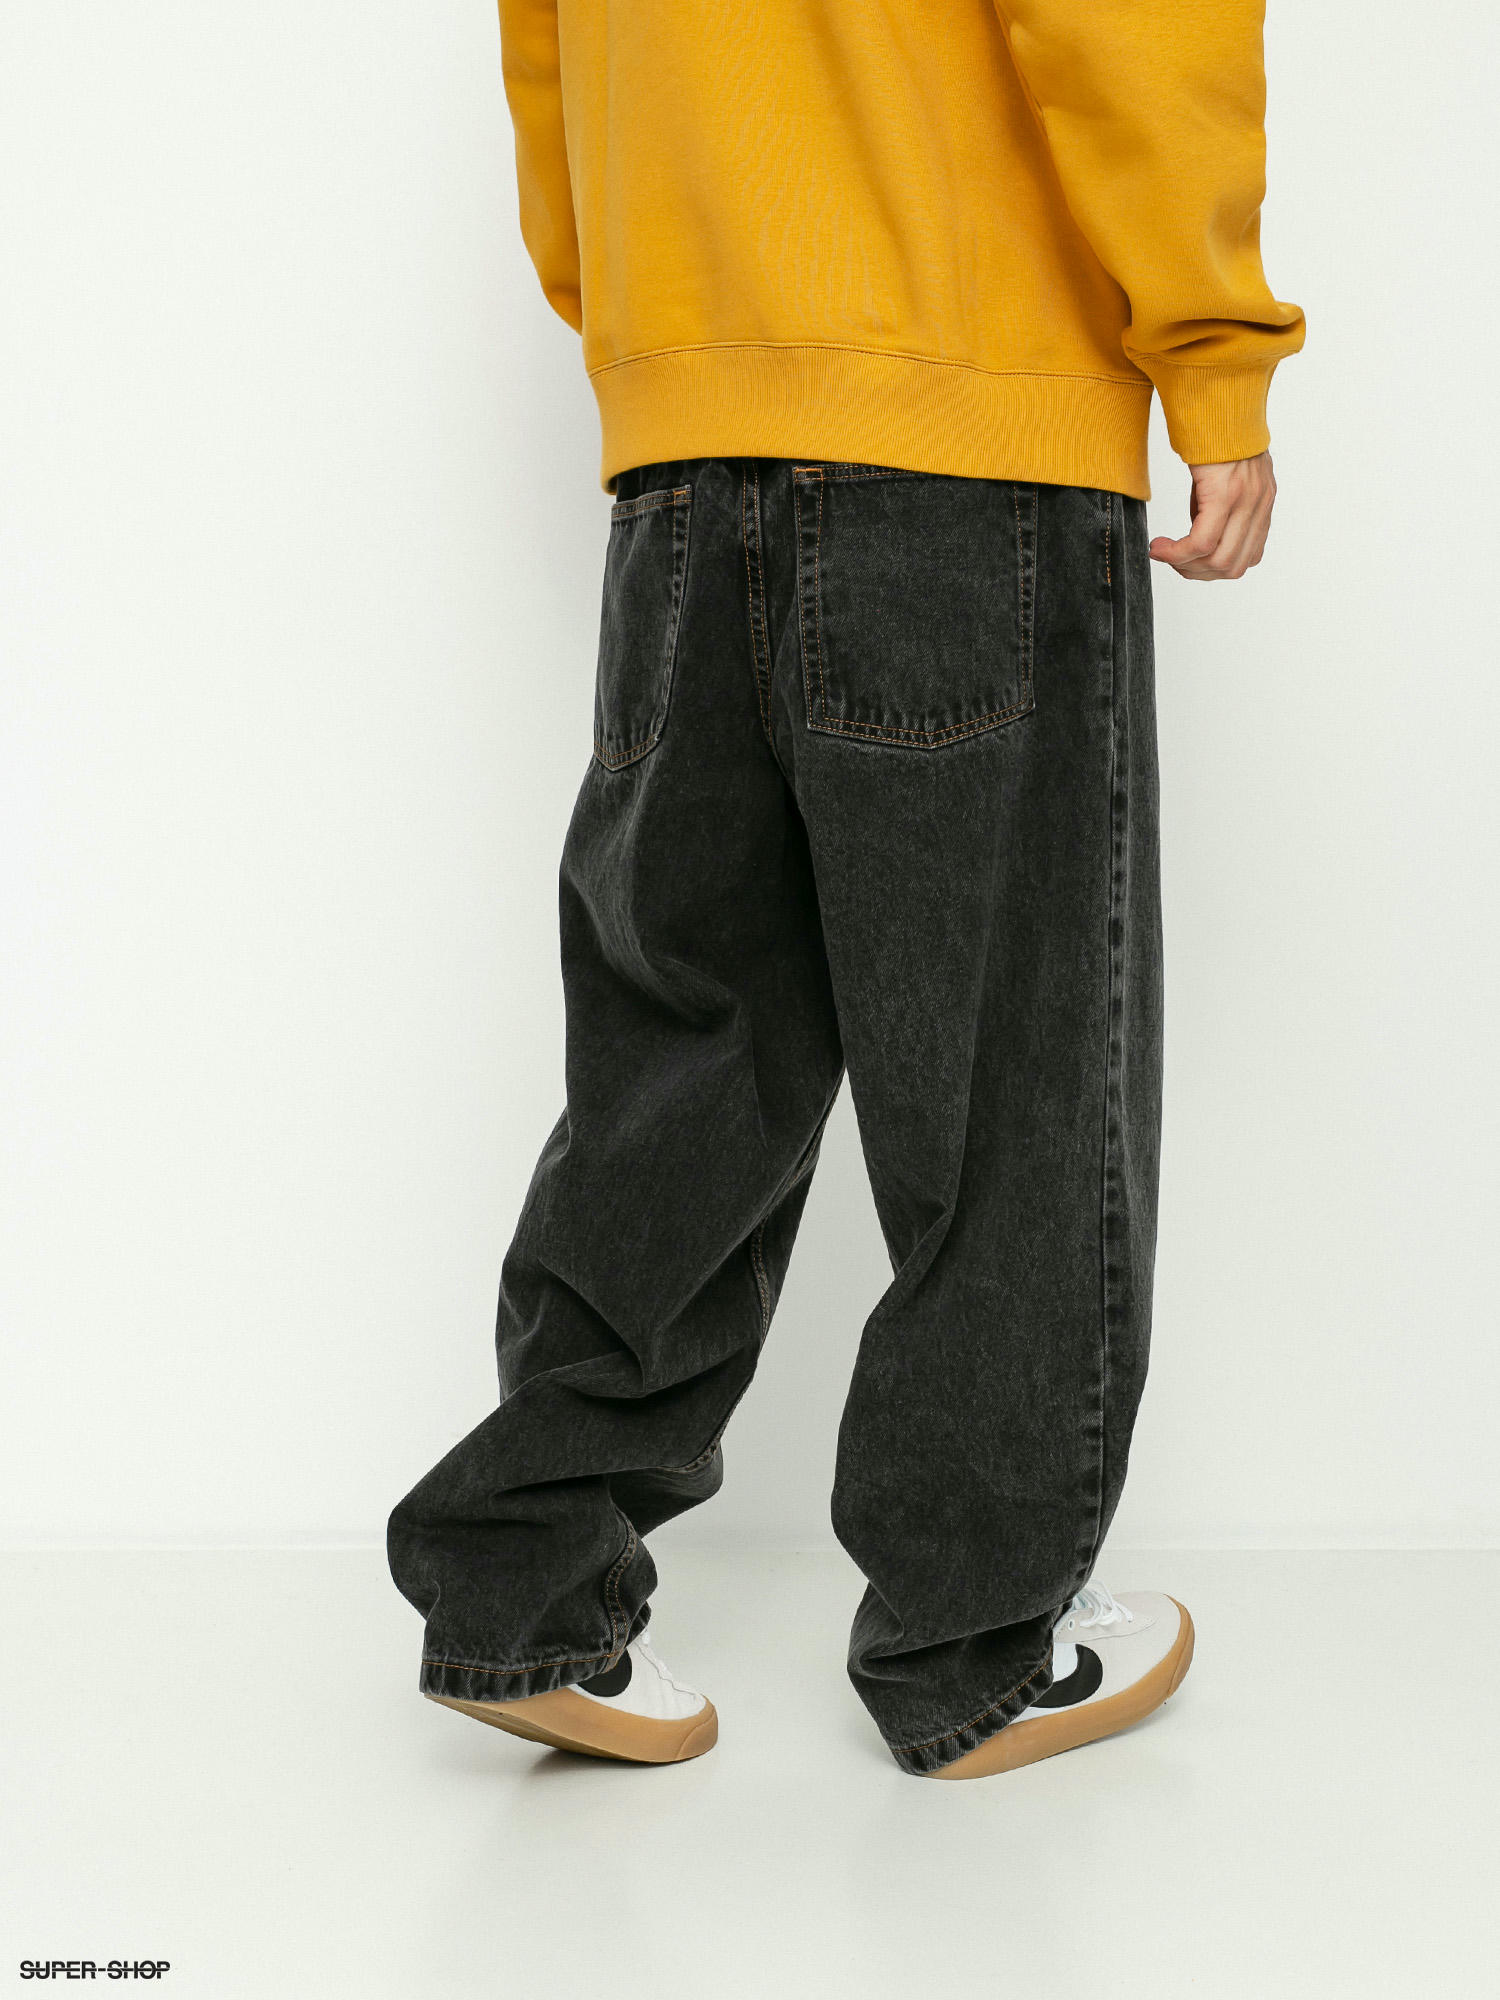 Polar Skate Big Boy Jeans Hose (washed black)